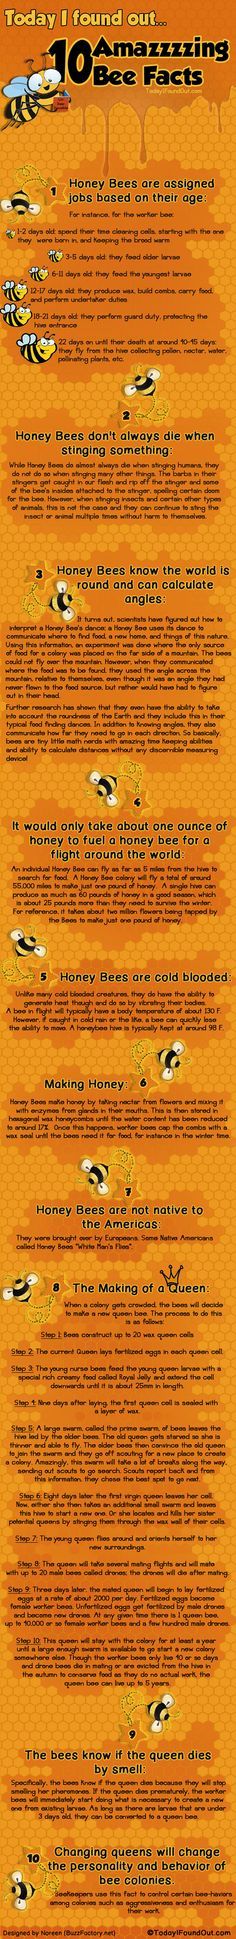 Top Ten Bee Facts – Infographic